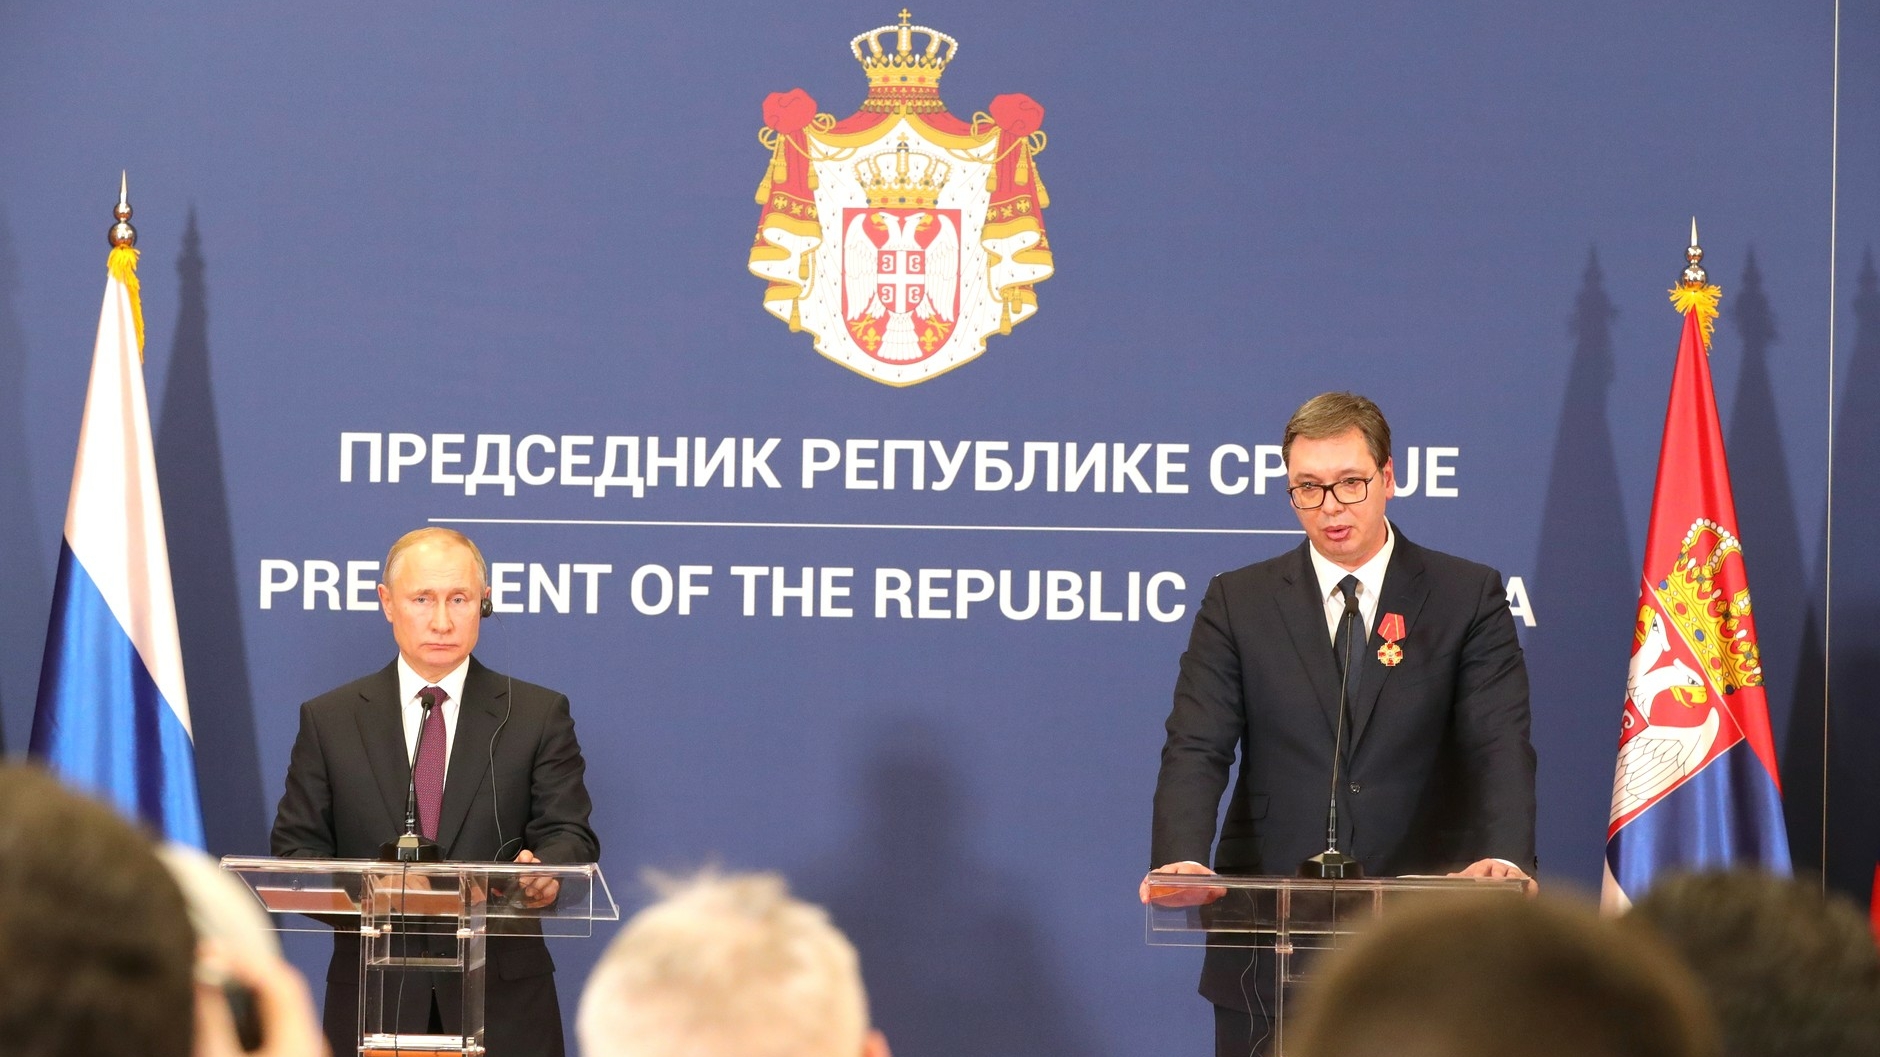 Россию предал союзник: в Китае осудили некрасивый поступок Сербии